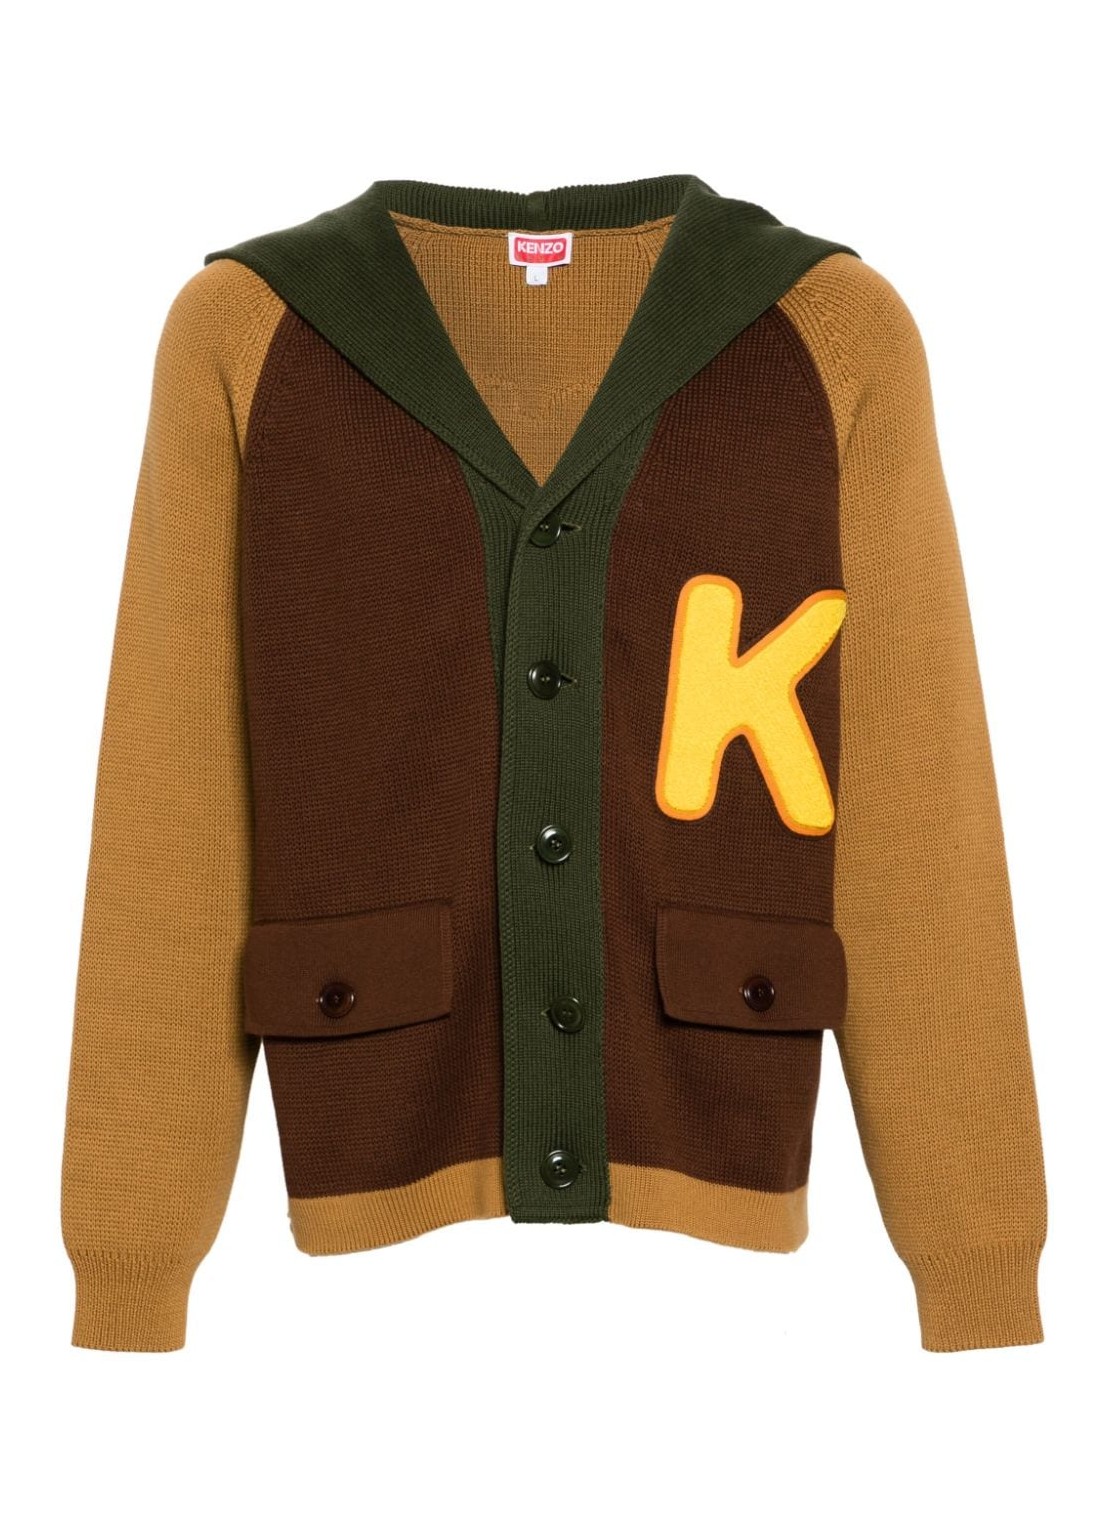 Punto kenzo knitwear man colorblock cardigan fe55ca4383bi 14 talla L
 